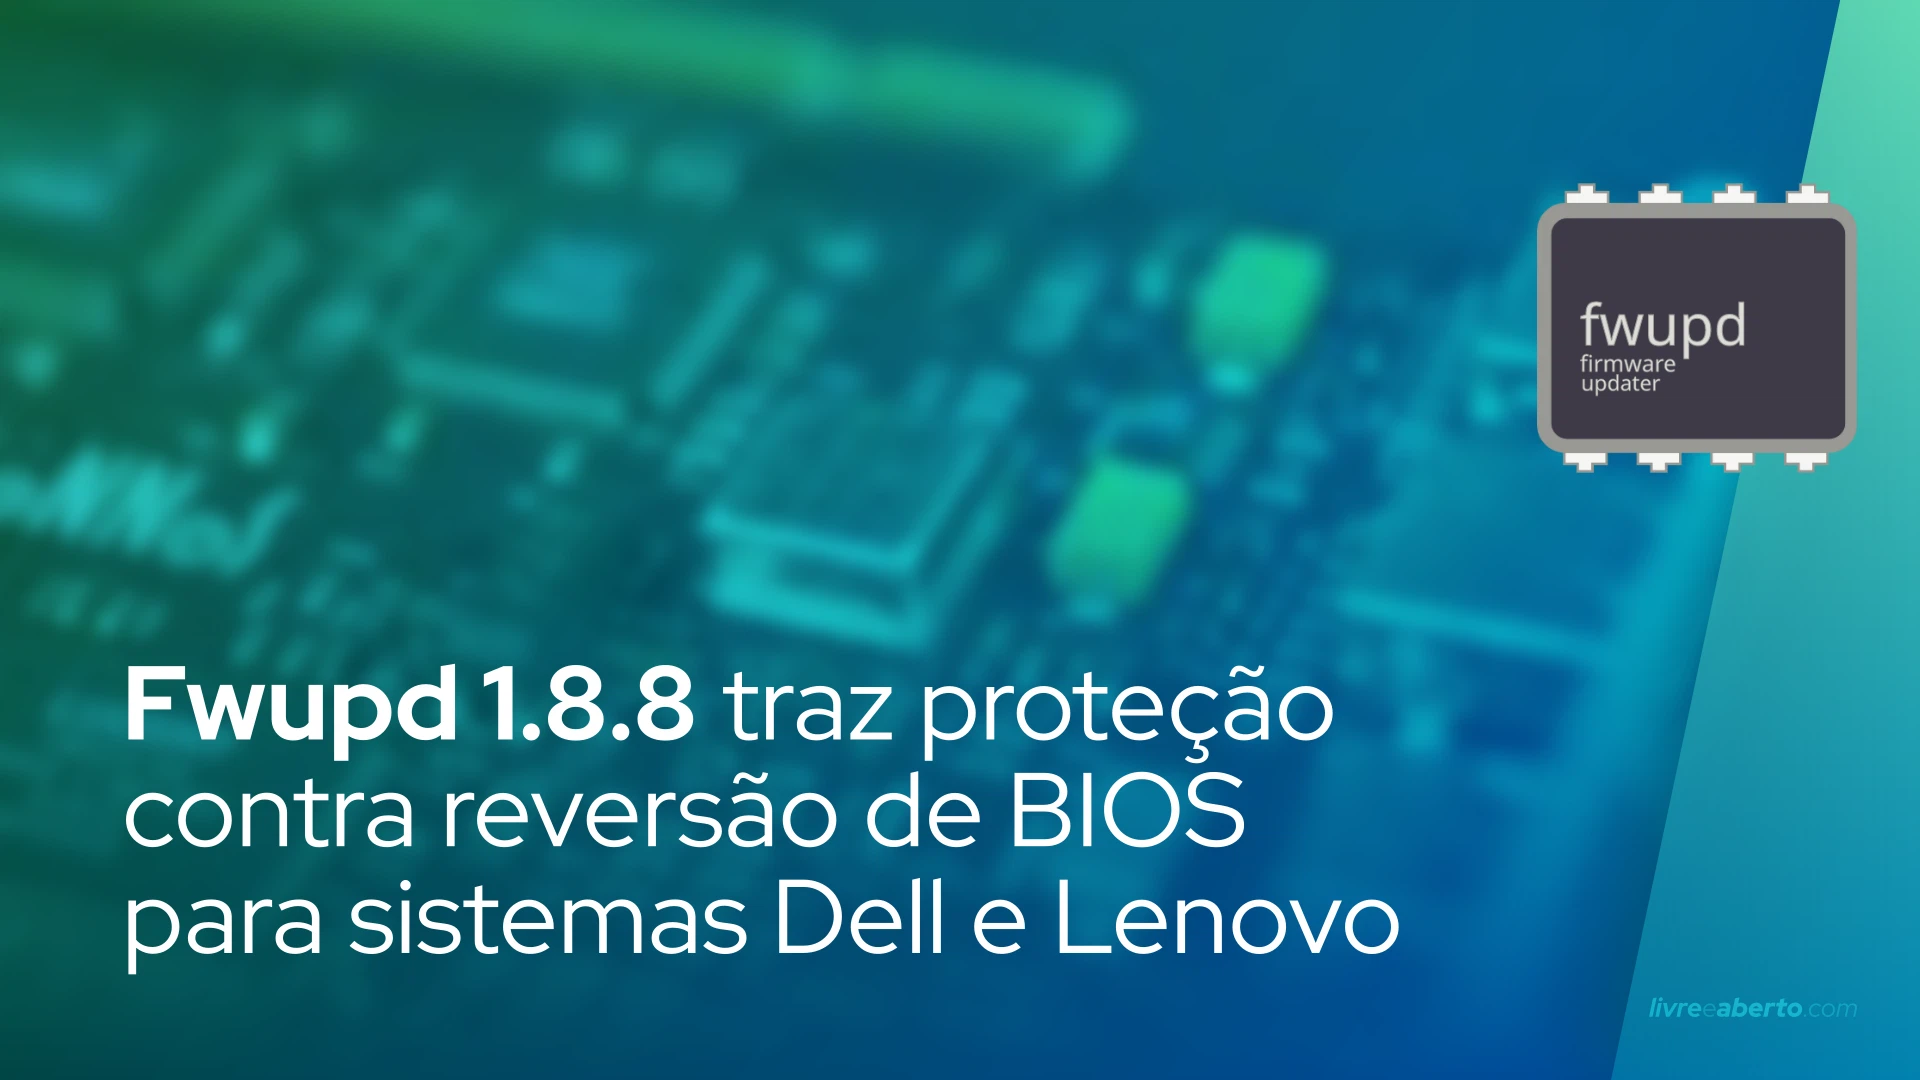 Fwupd 1.8.8 traz suporte de proteção contra reversão de BIOS para sistemas Dell e Lenovo